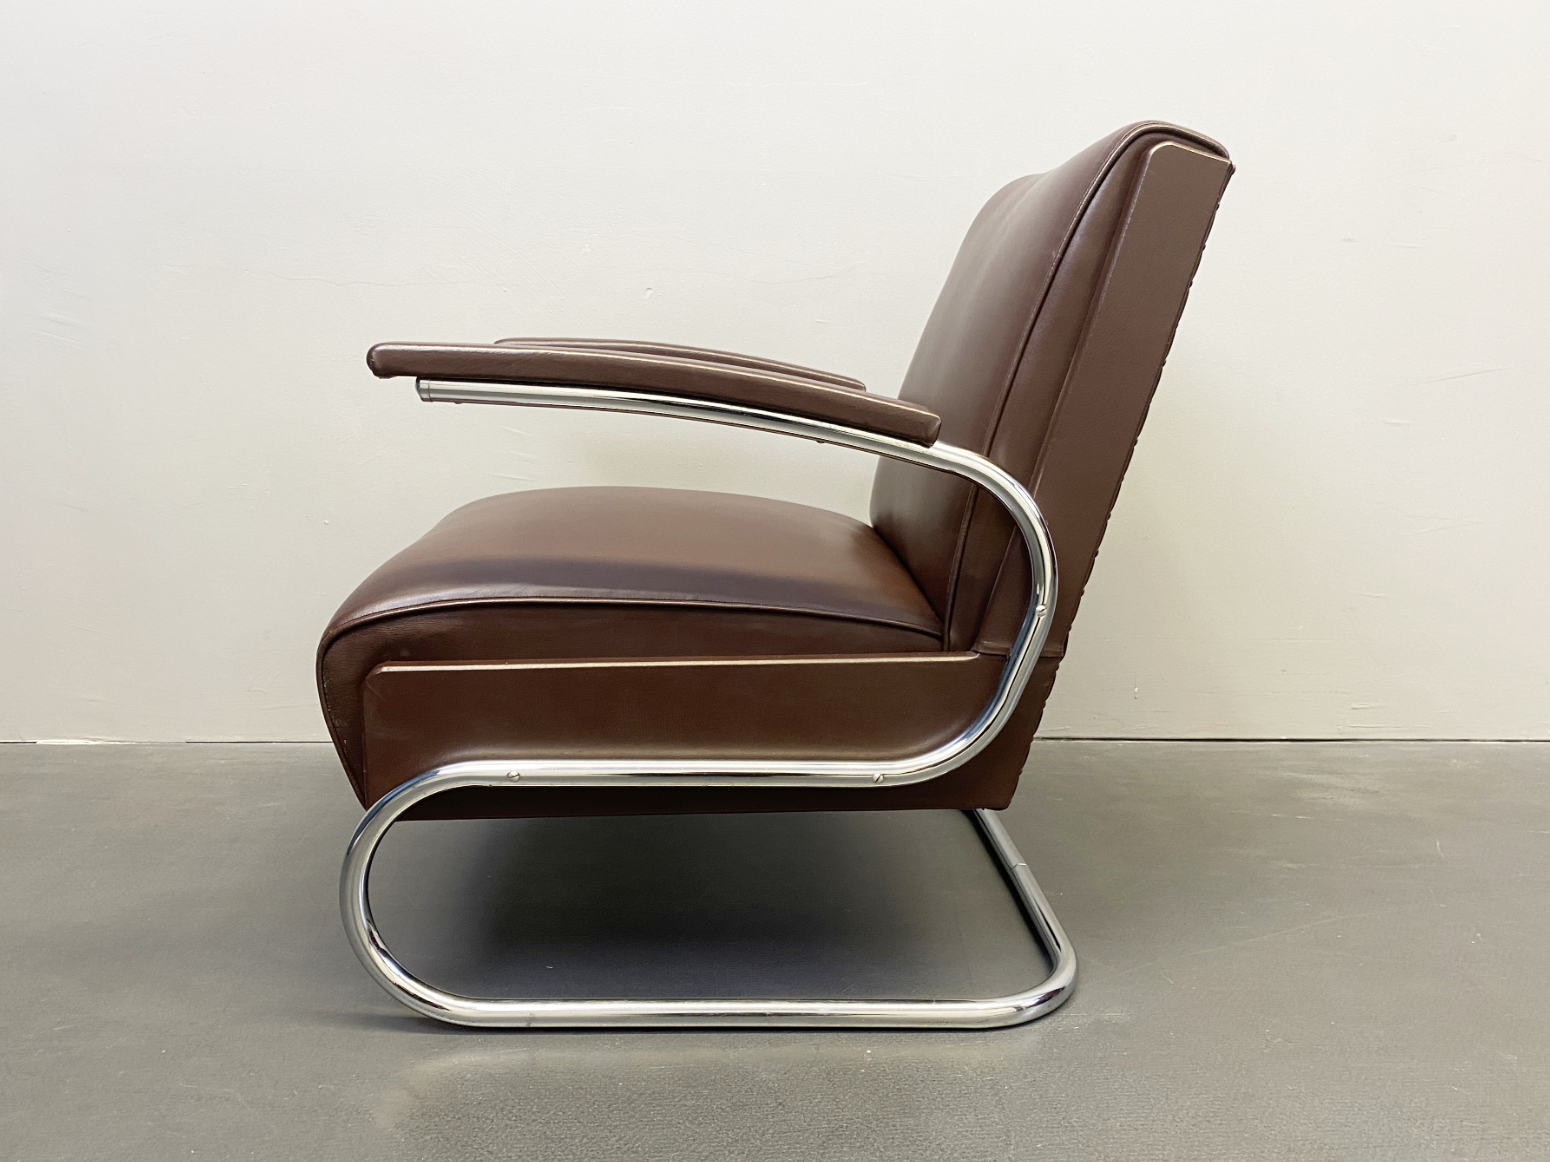 Armlehnsessel / Easy -Chair / Sessel aus Stahlrohr und braunem Leder von Mücke Melder, 1930s.